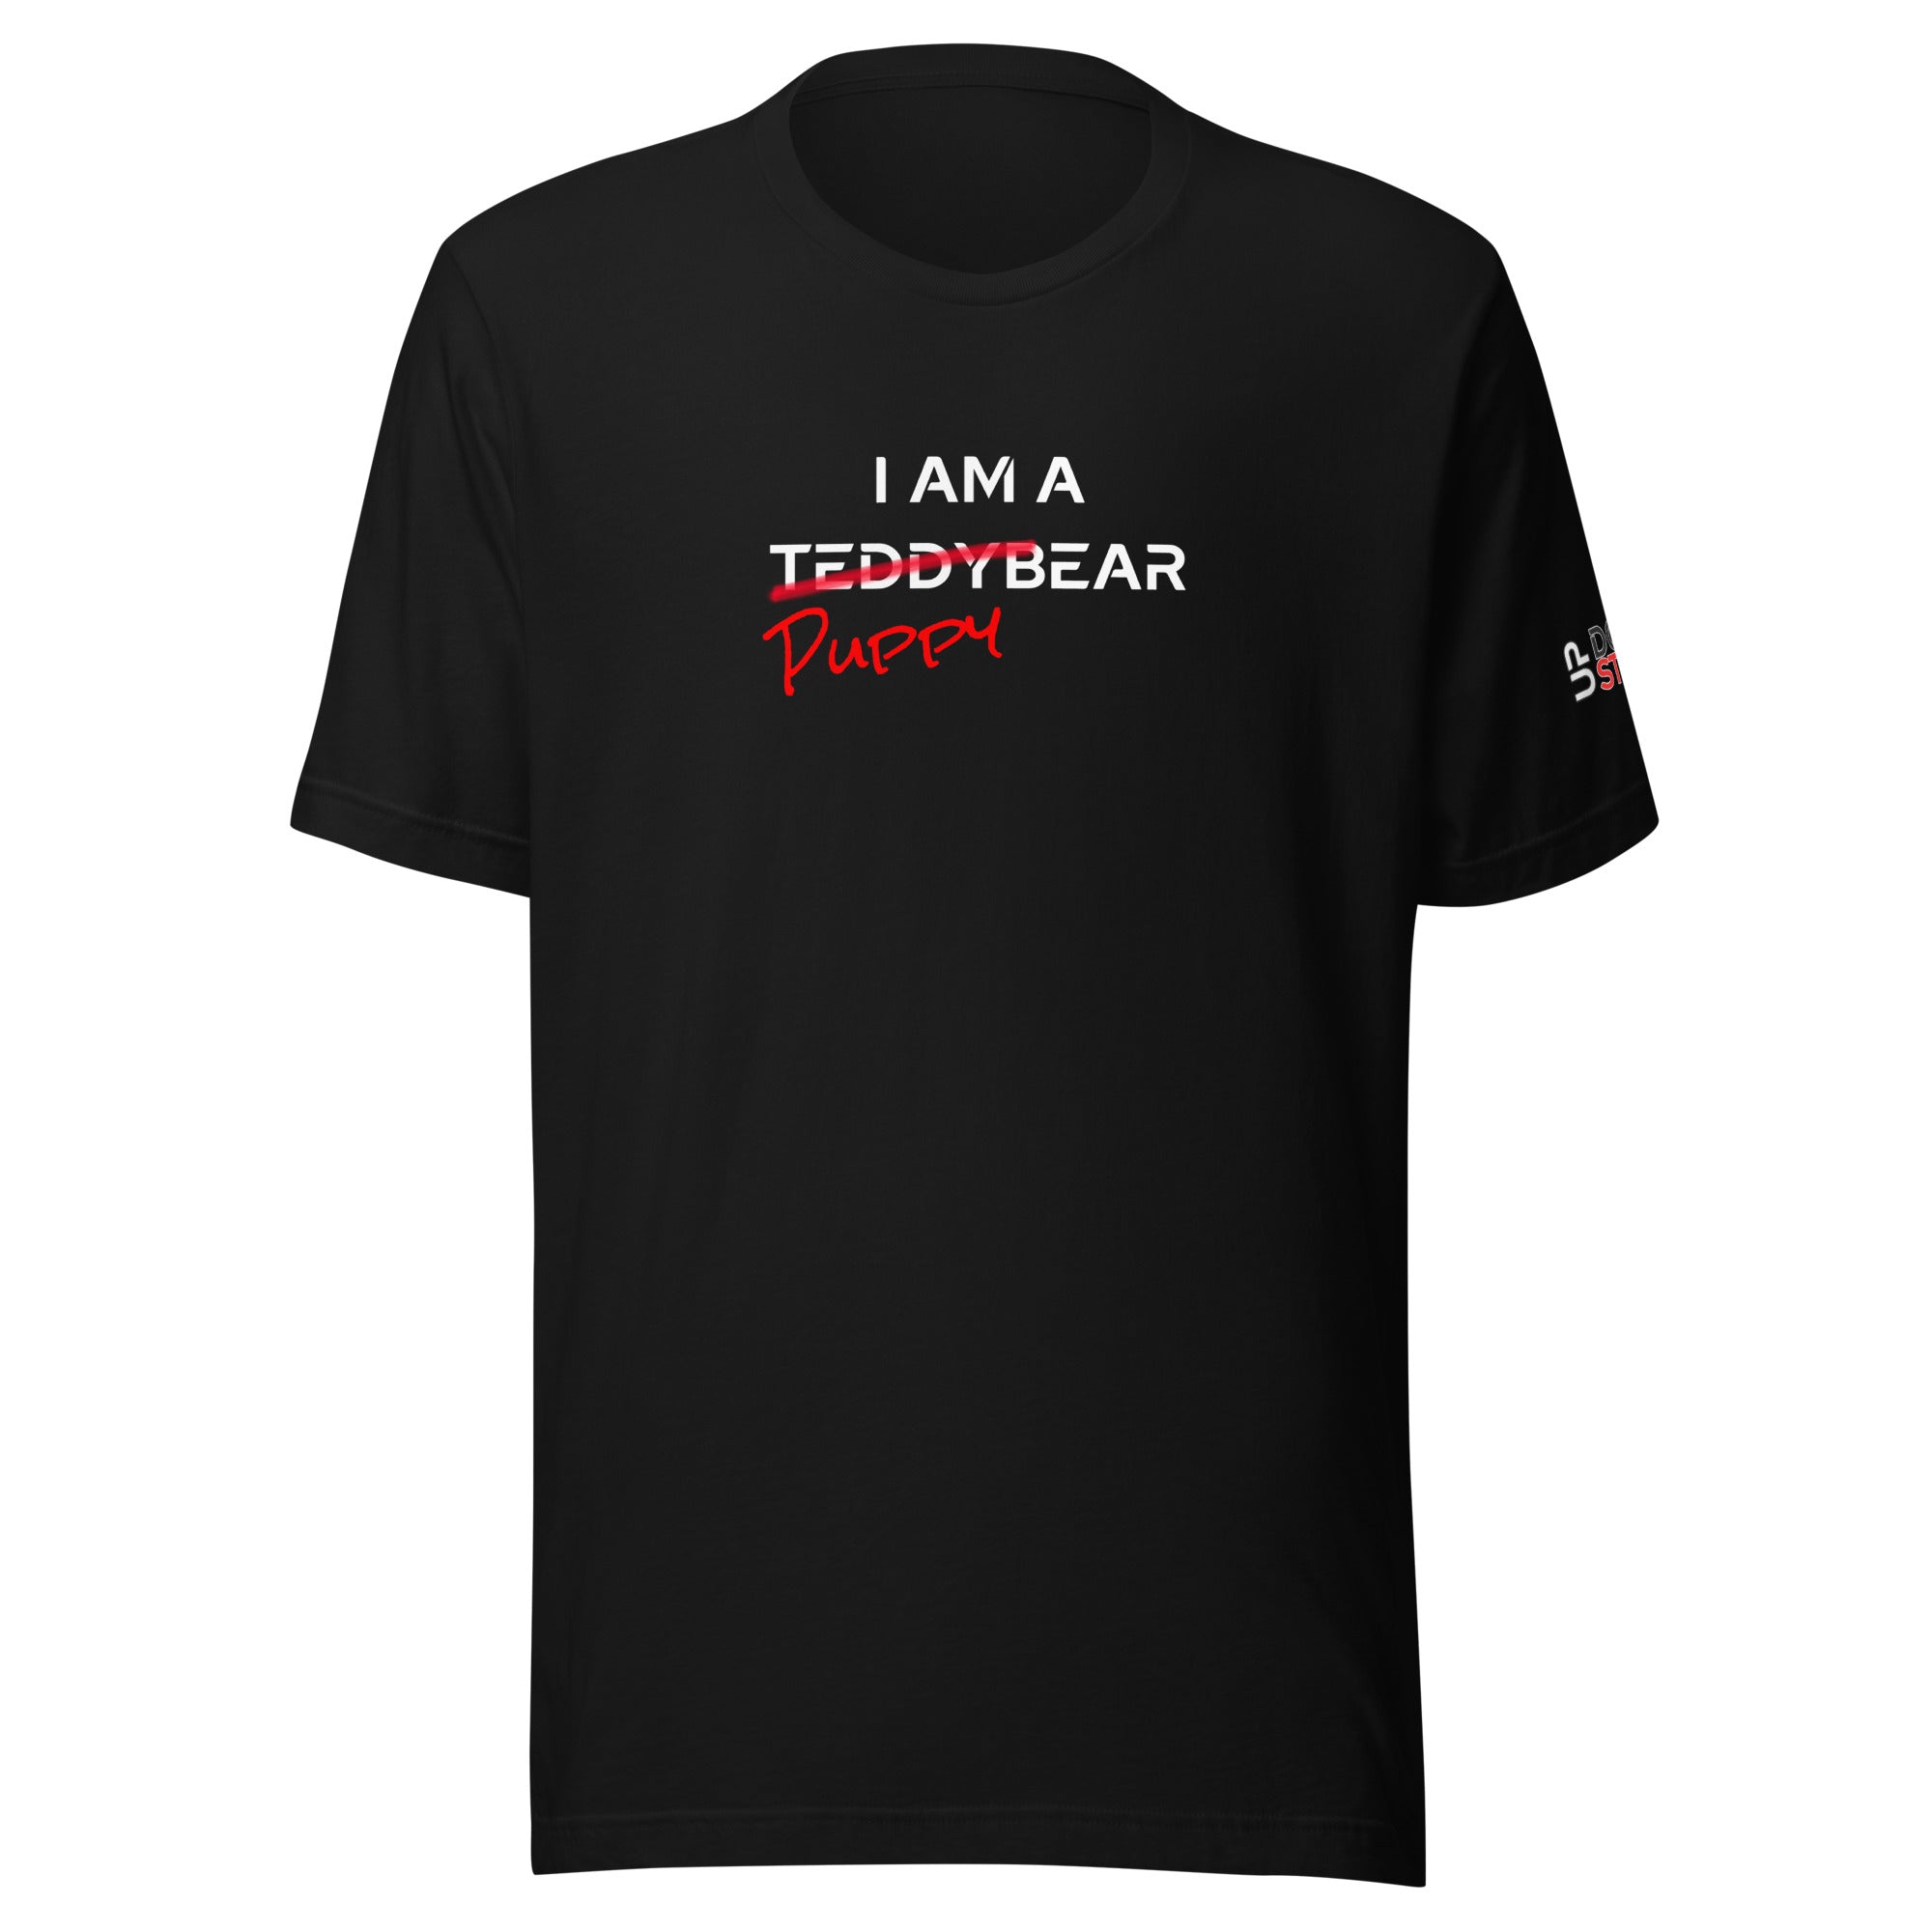 I am a PuppyBear / T-Shirt